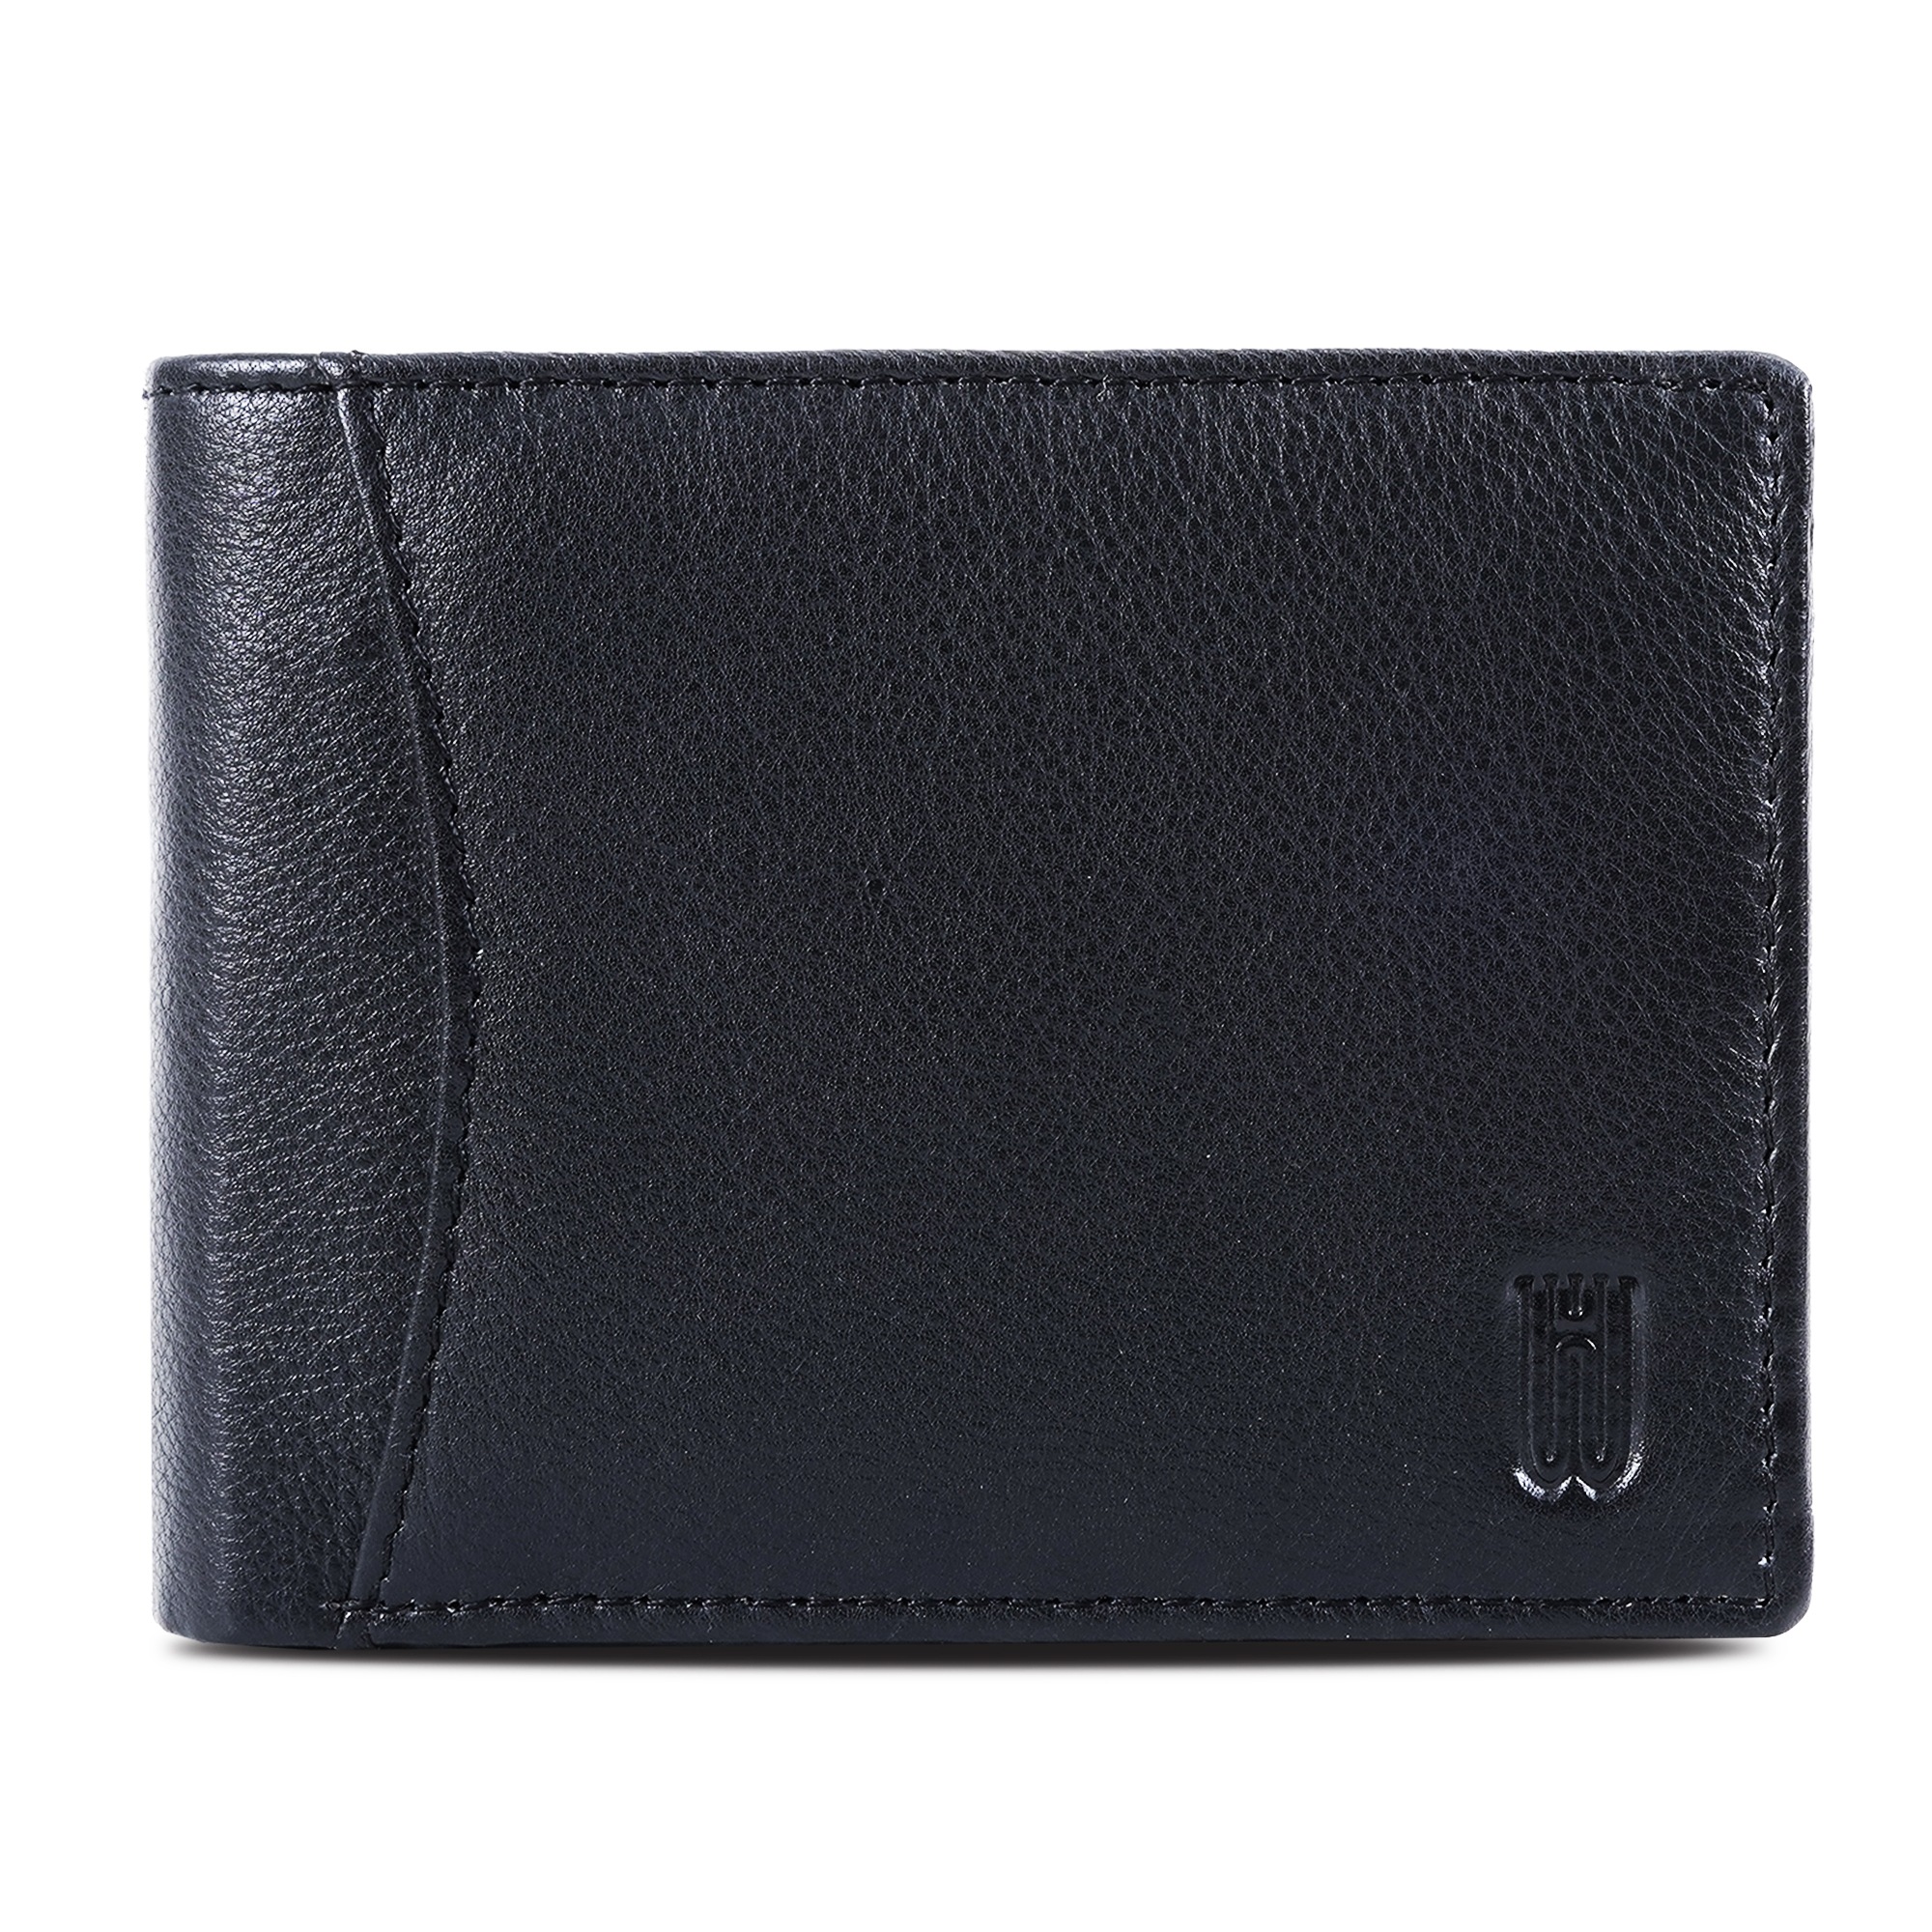 Leather Belt Wallet Combo For Men (Tan-Black)